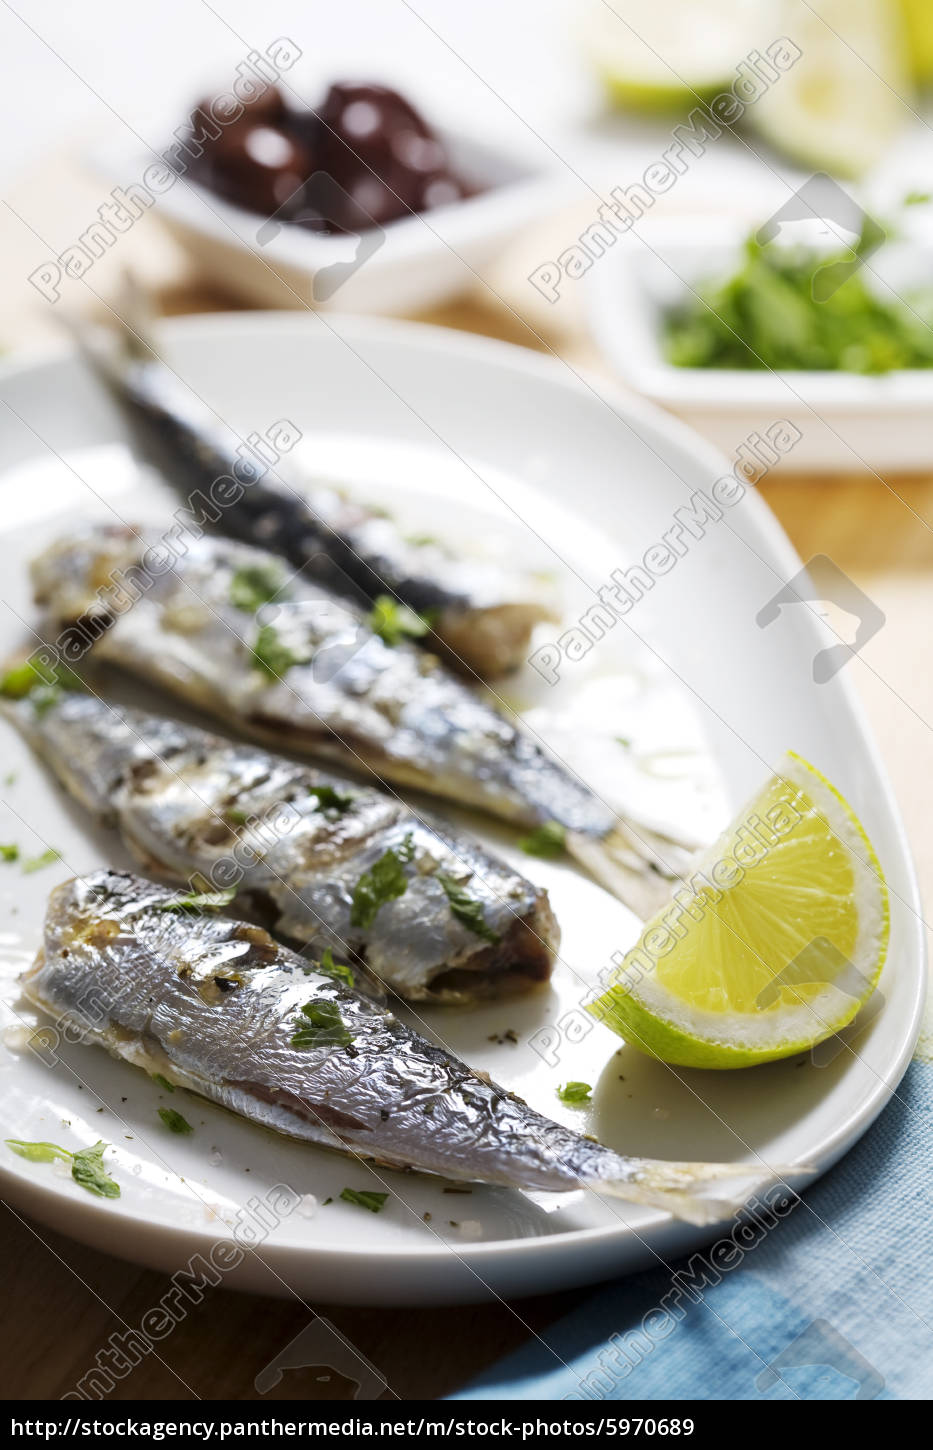 gegrillte sardinen - Lizenzfreies Bild - #5970689 | Bildagentur ...